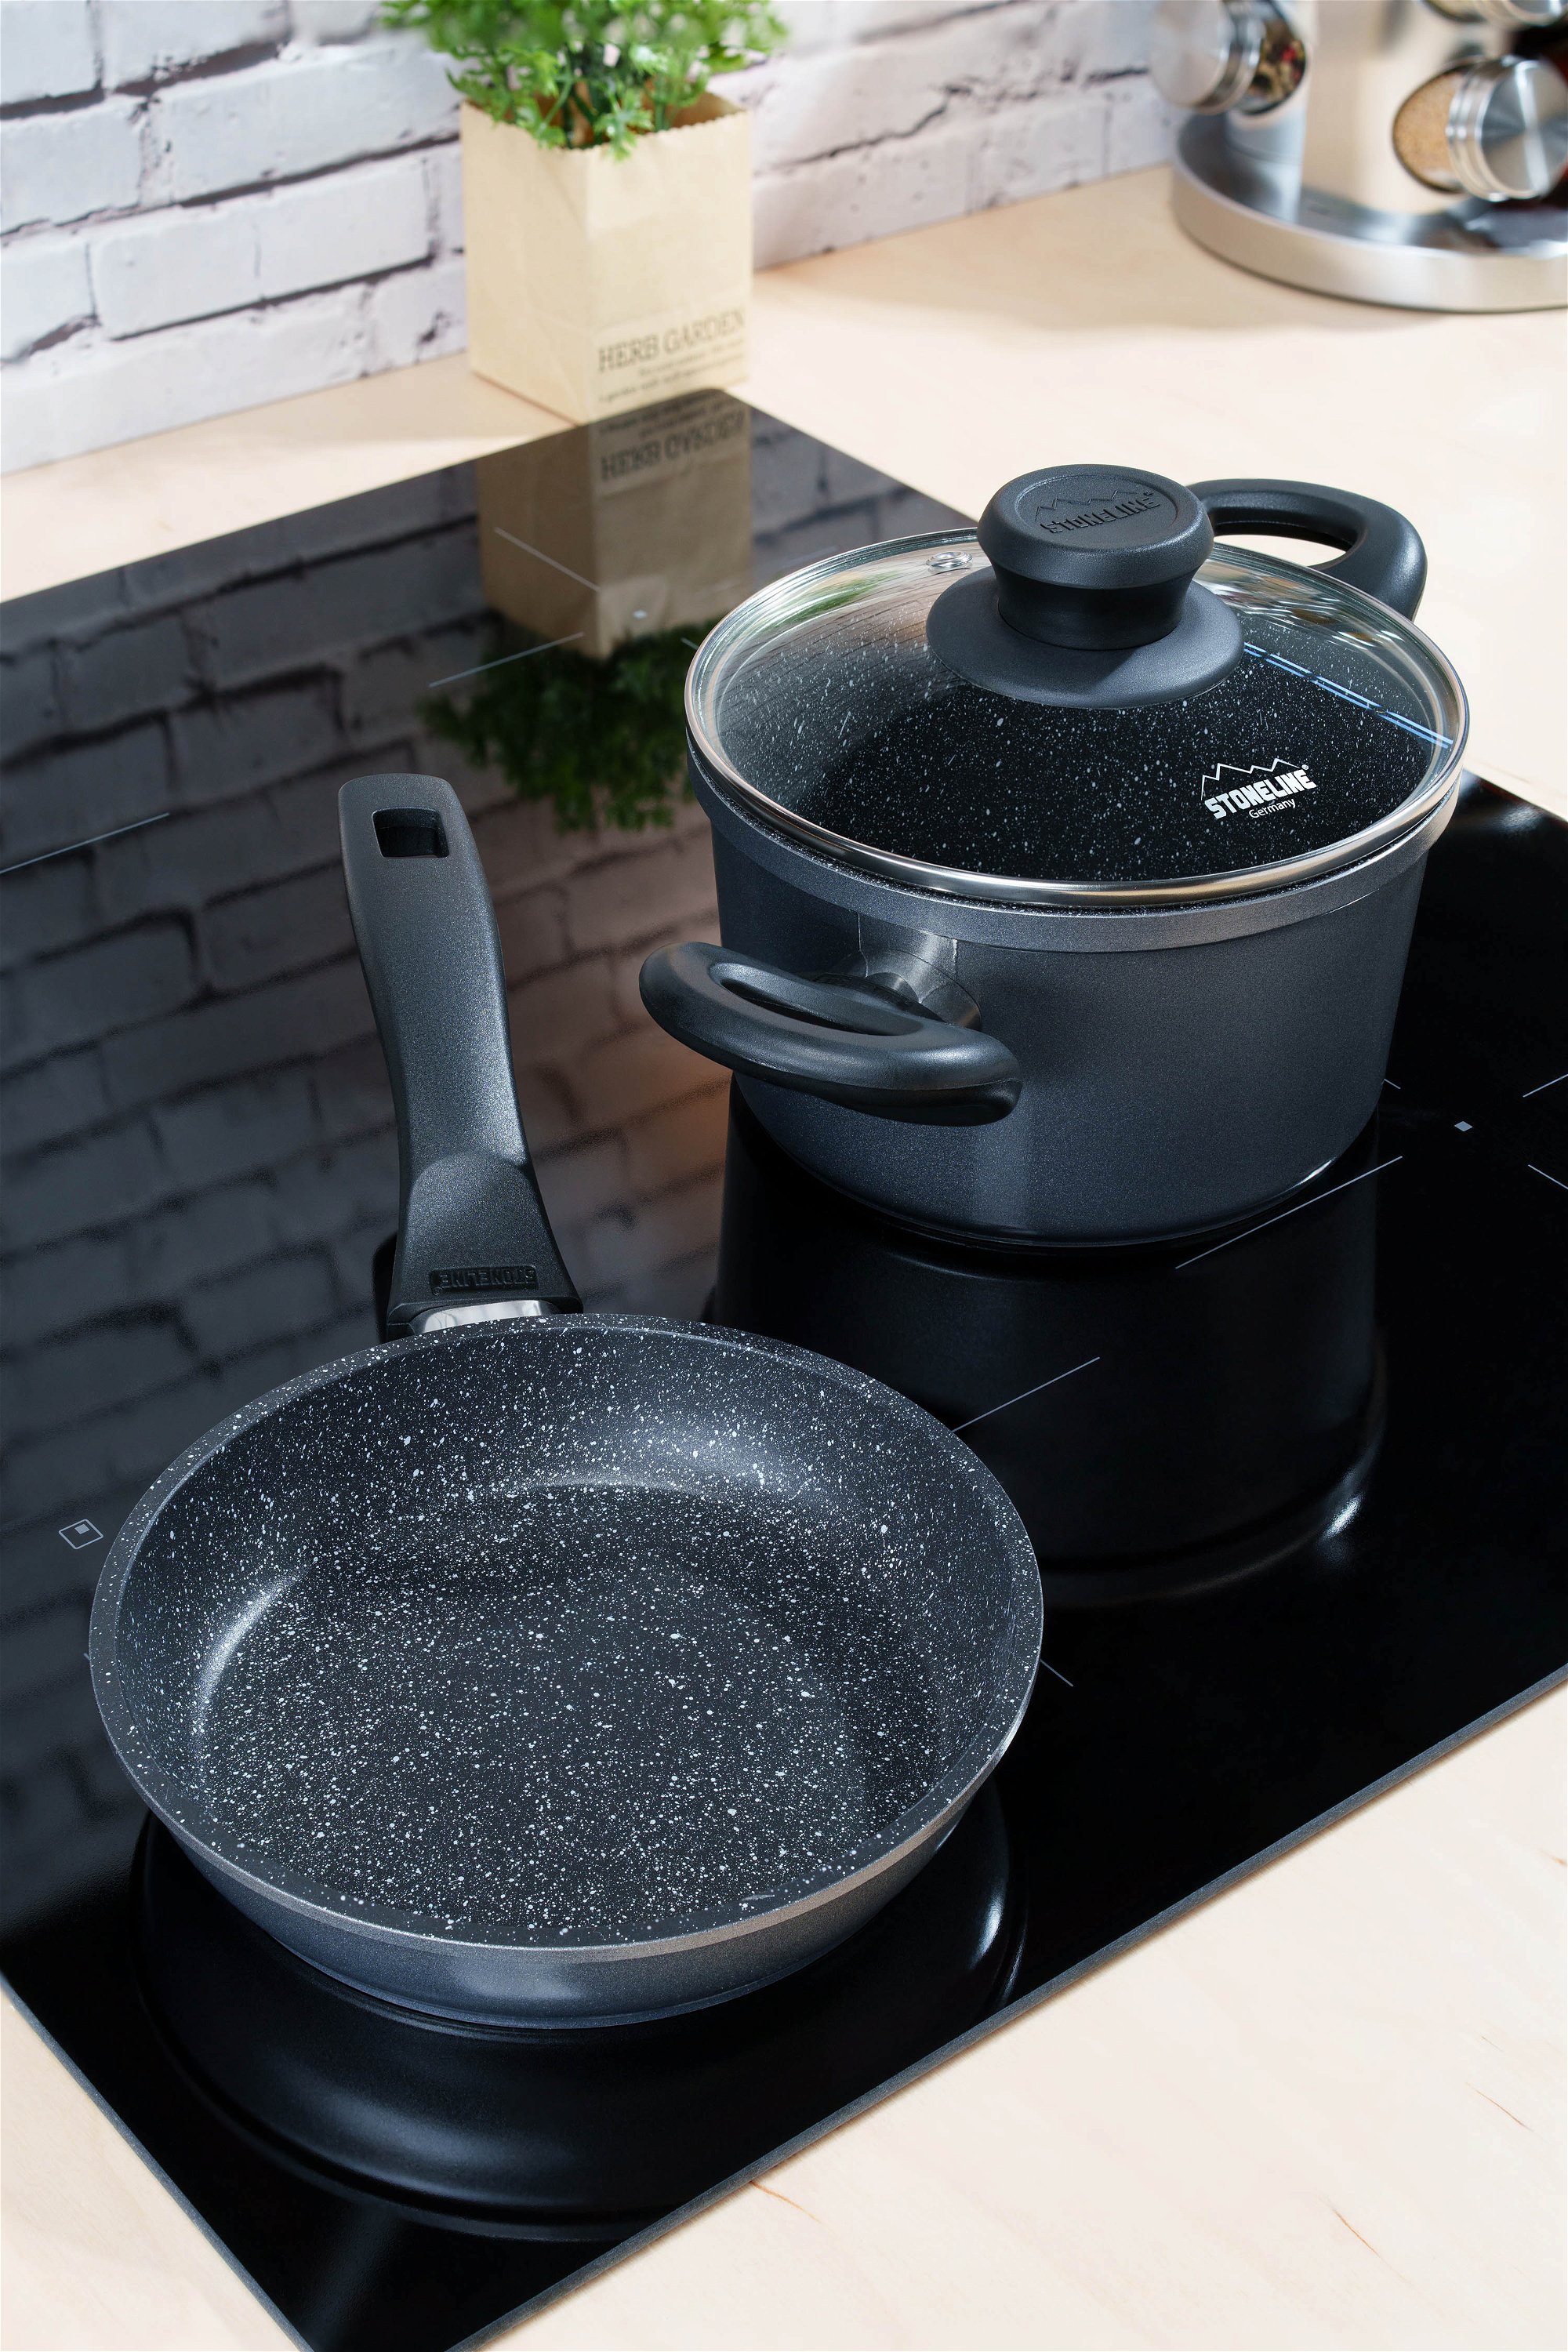 STONELINE® 3 pc Cookware Set 16 cm, with Lid, Non-Stick Pots & Pans | CLASSIC